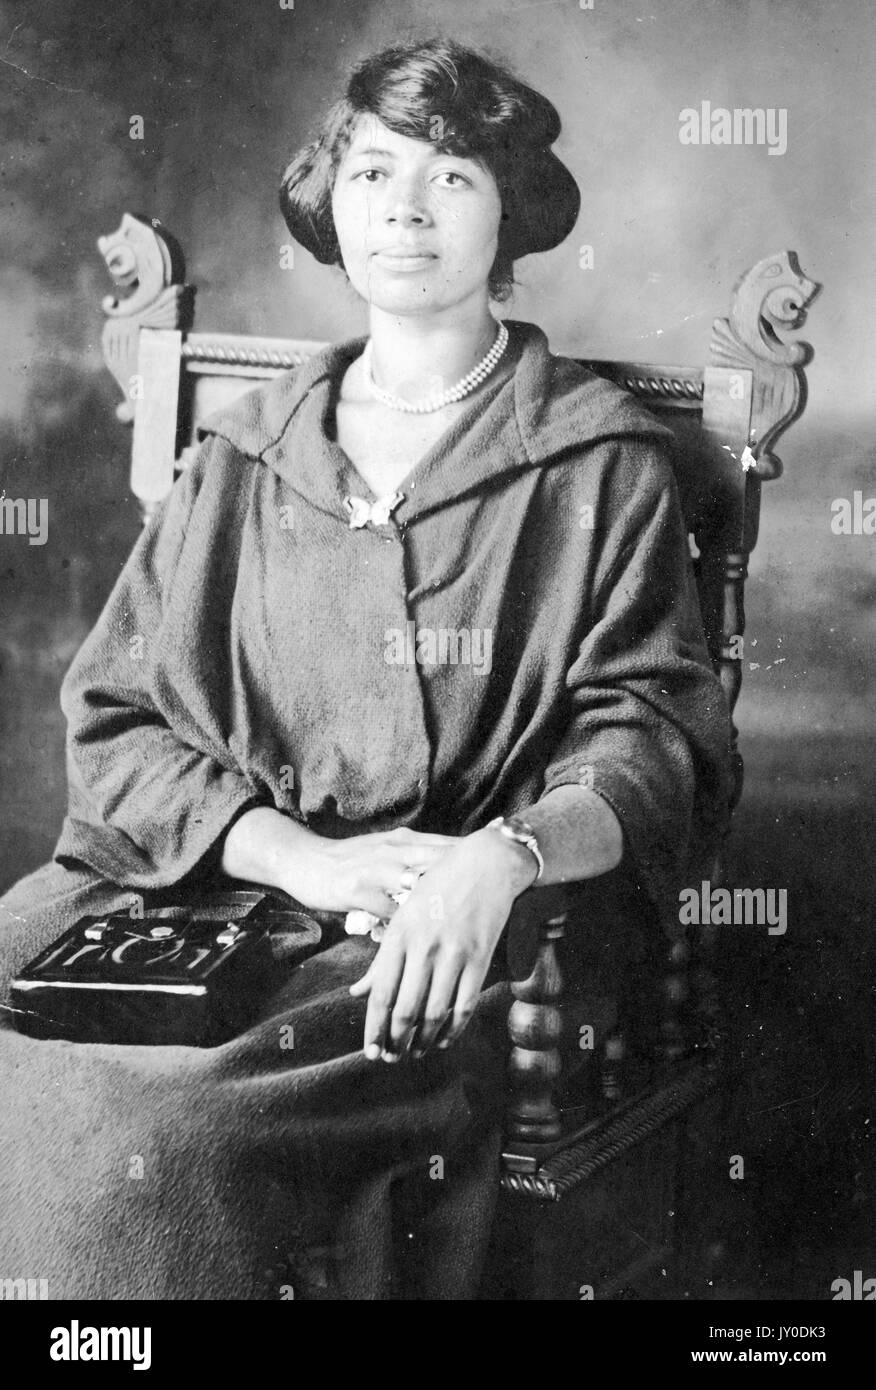 Ritratto di una donna afro-americana seduta su una sedia di legno curva, indossa un lungo abito di colore scuro e una collana di perle, una borsetta di colore scuro sta riposando in grembo, il braccio destro riposa anche in grembo e il braccio sinistro poggia sul braccio della sedia, 1920. Foto Stock